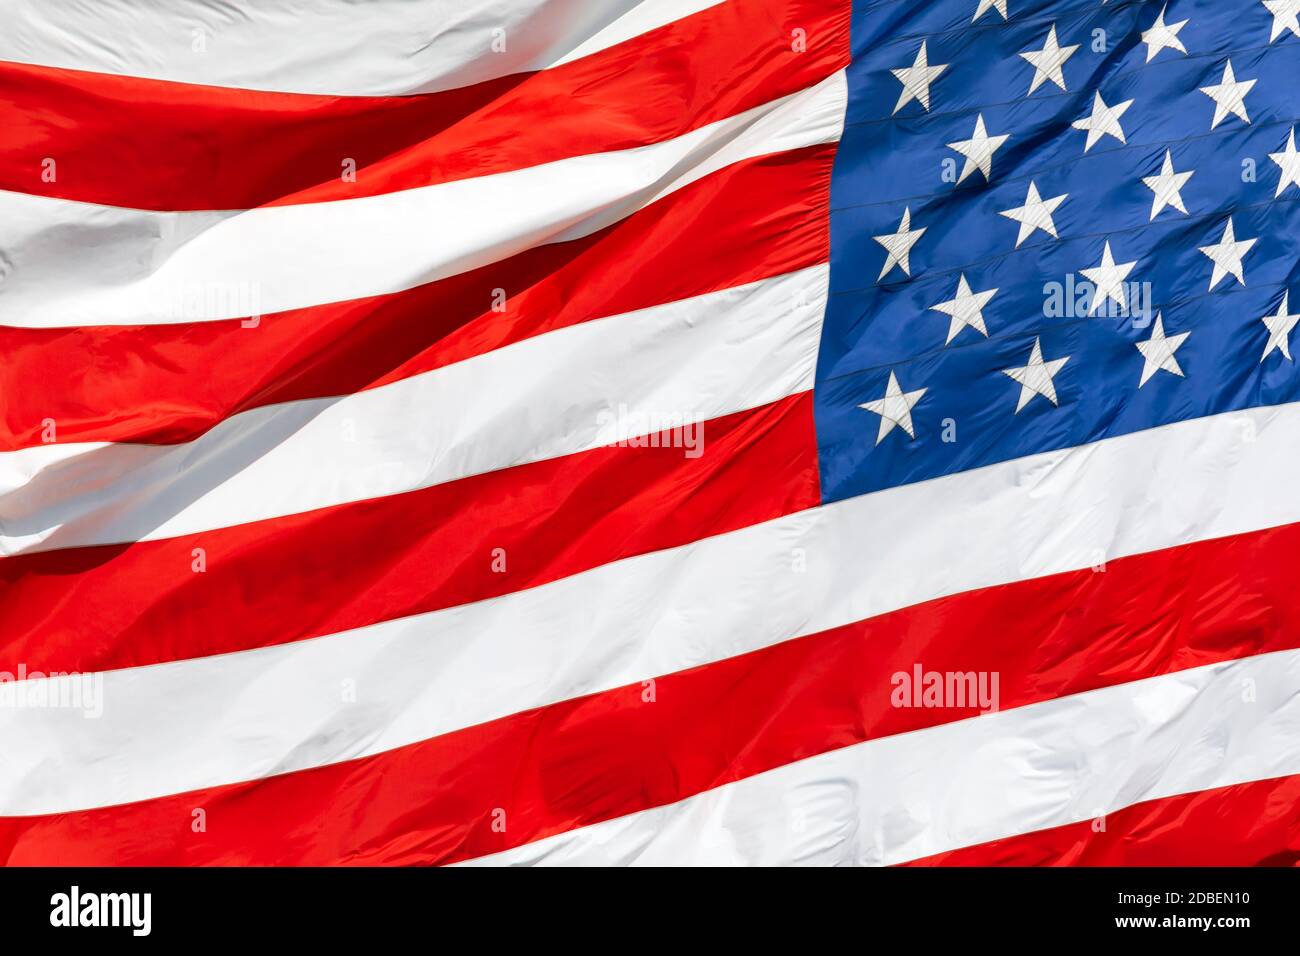 Bandiera americana che oscilla nel vento, bandiera americana in primo piano, bandiera rossa bianca blu all'aperto sotto la luce del sole. Bandiera nazionale degli Stati Uniti d'America. Stelle e strisce degli Stati Uniti Foto Stock